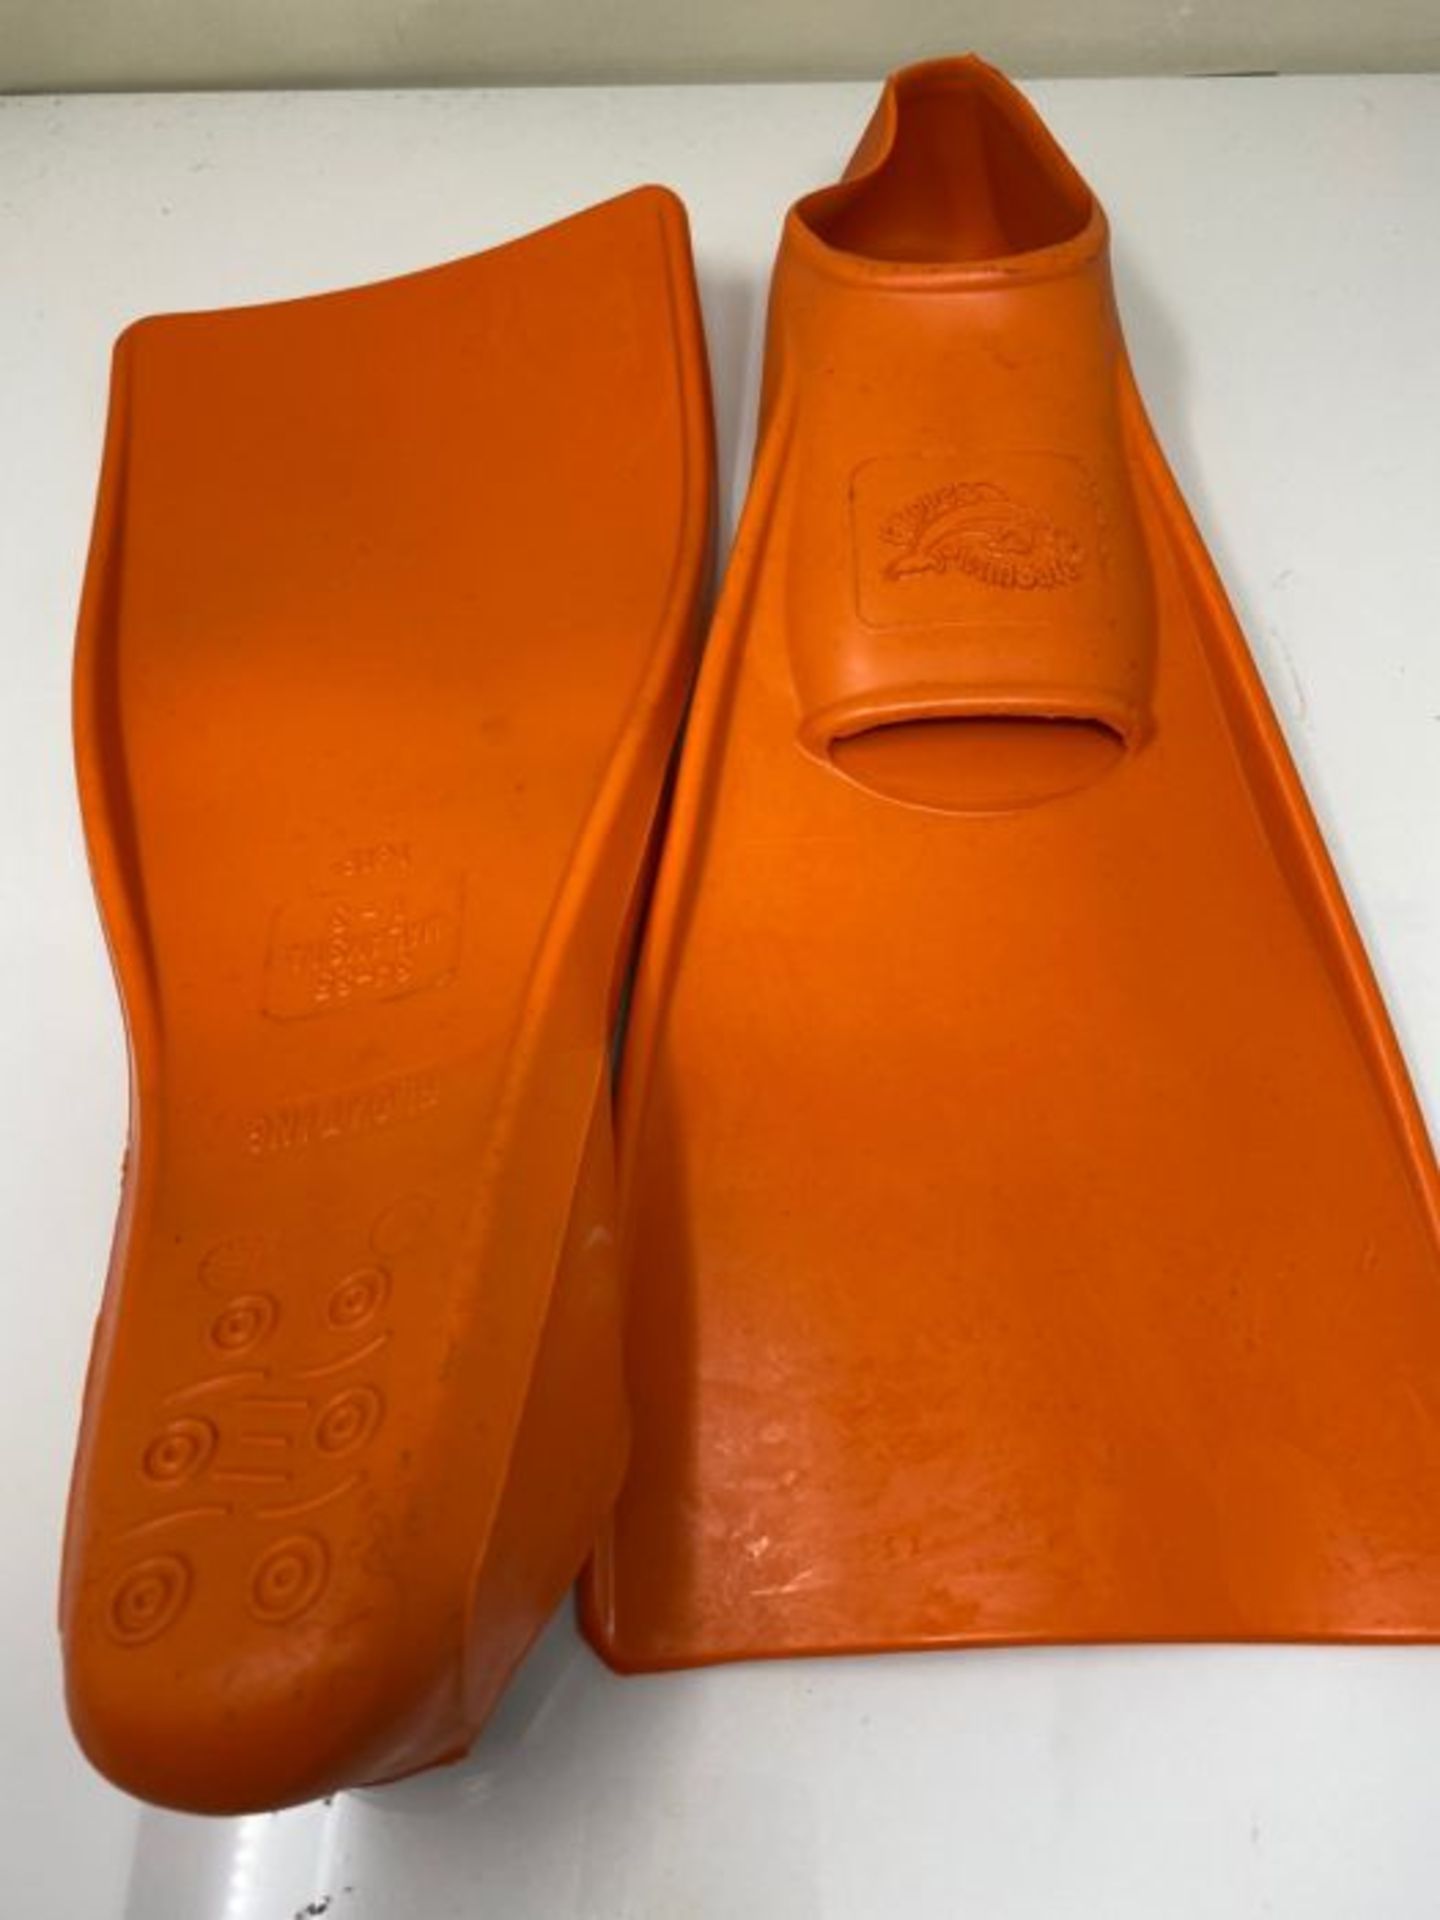 Flipper SwimSafe 1150 - Schwimmflossen für Kinder, in der Farbe Orange, Größe 34 ? - Image 2 of 2